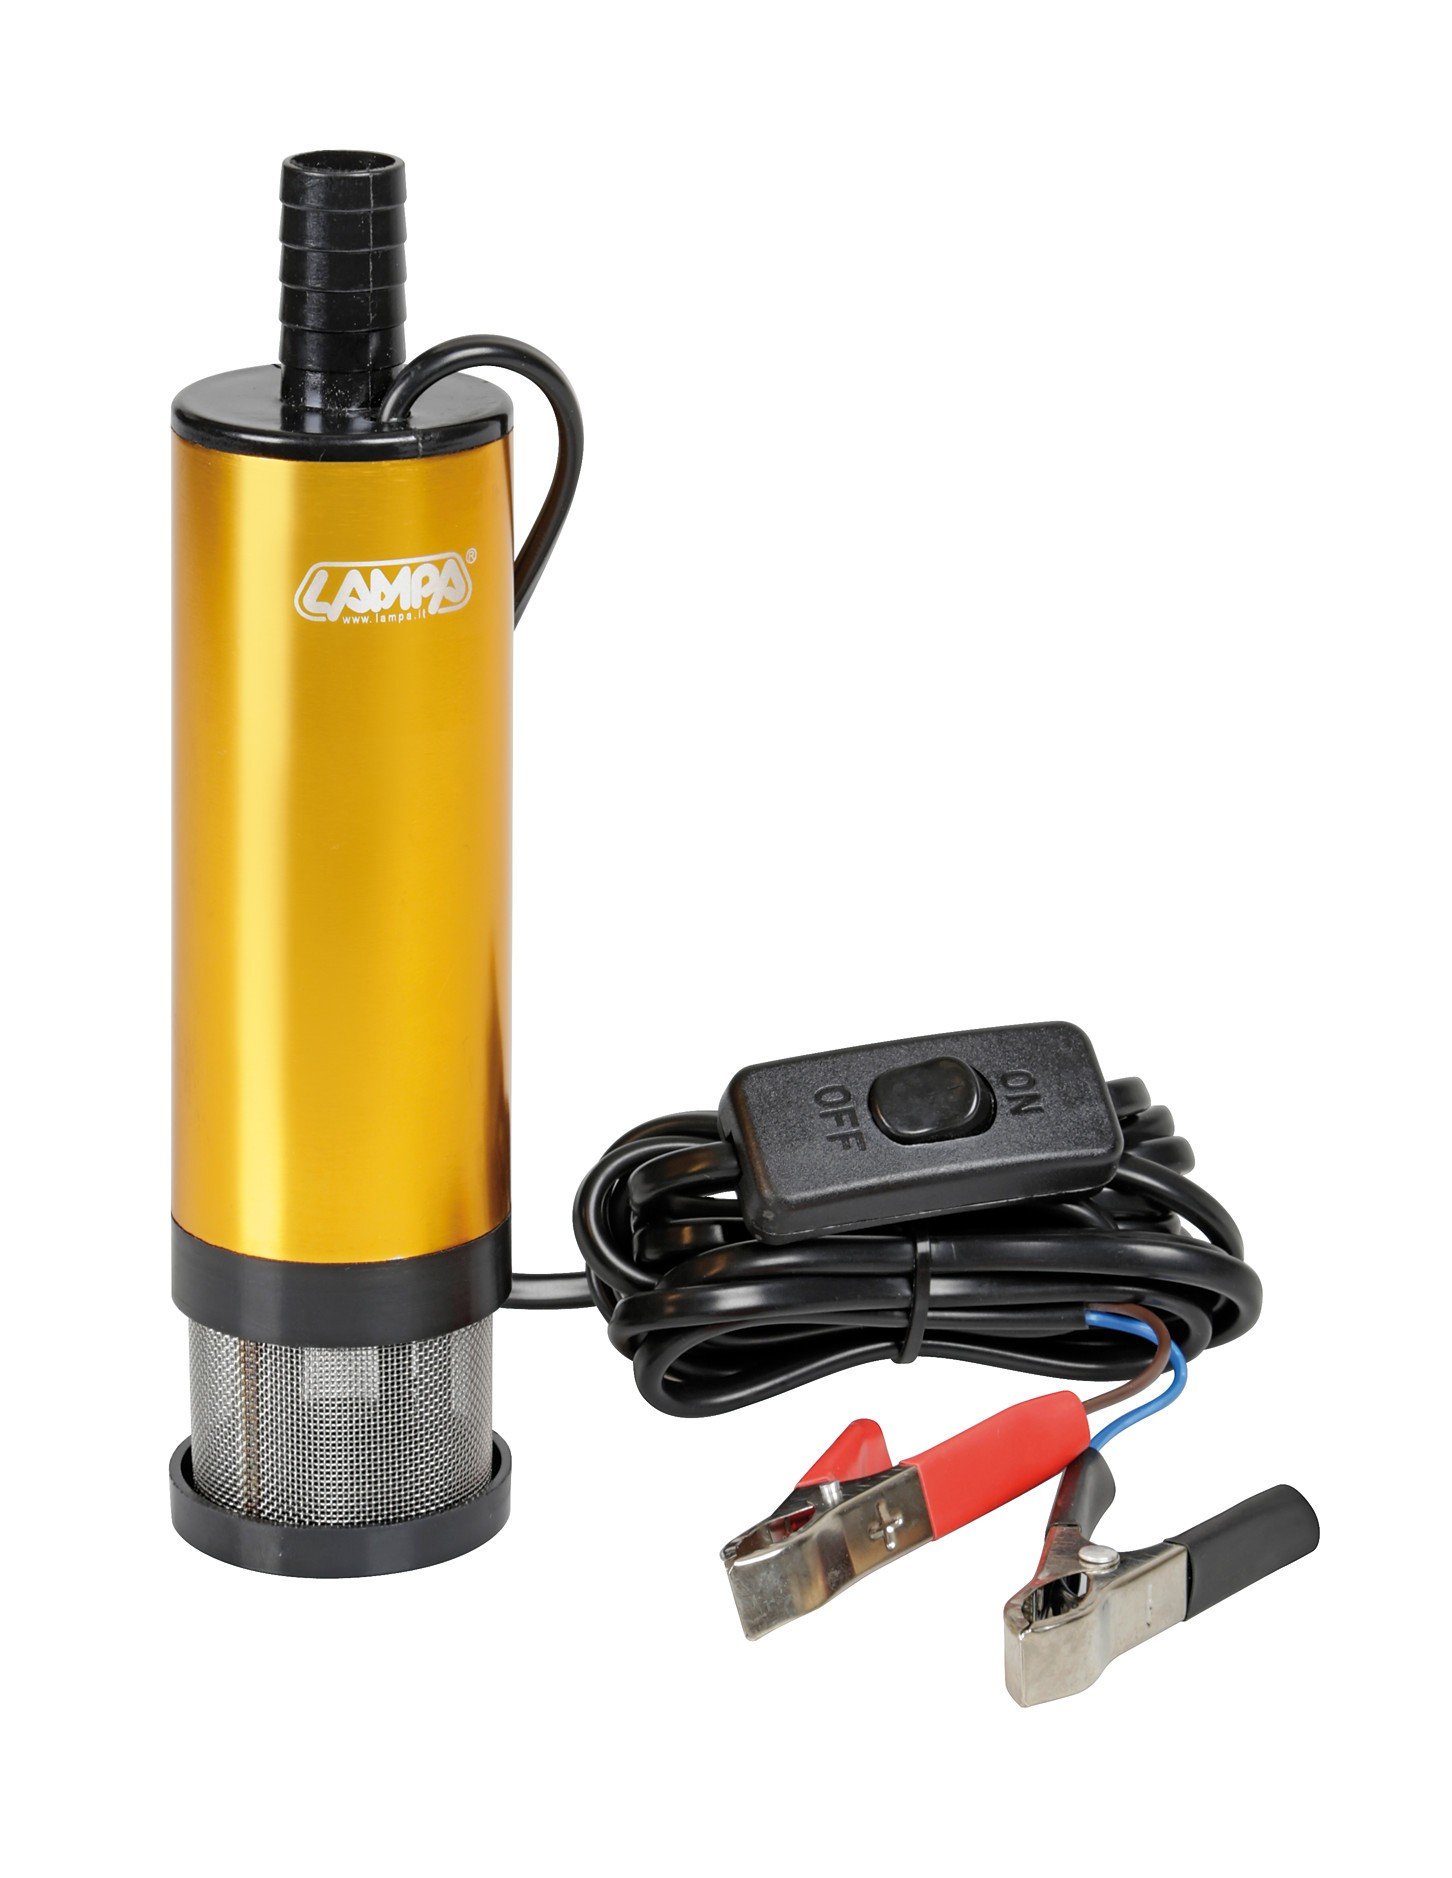 Pompa aspira liquidi elettrica ad immersione, 12V - 30 L/min